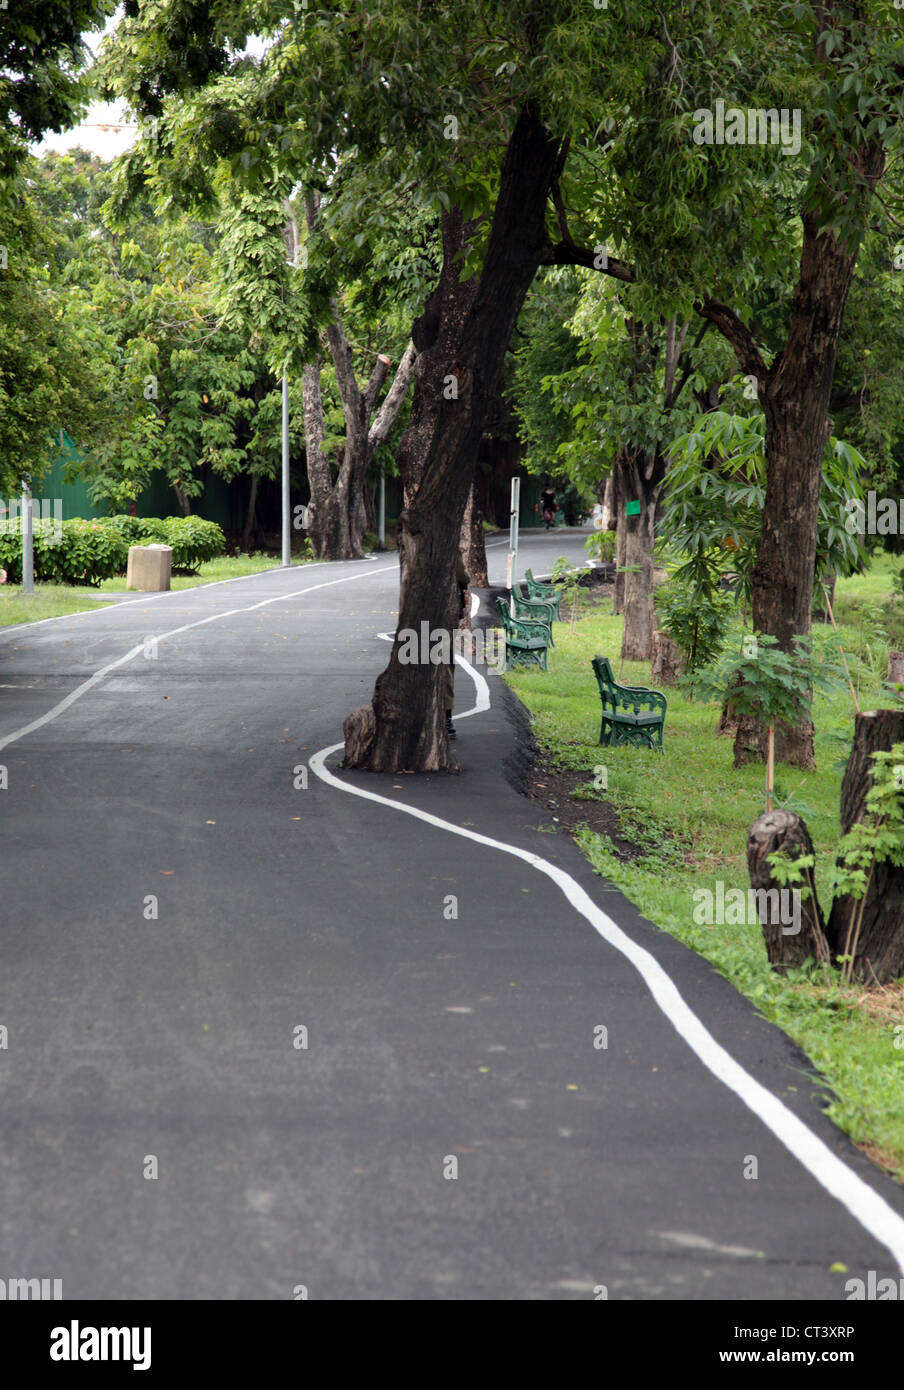 C'est une photo d'une route étrange dans un parc à Bangkok que passer. La route n'est pas droit et il y a des arbres dans le milieu Banque D'Images